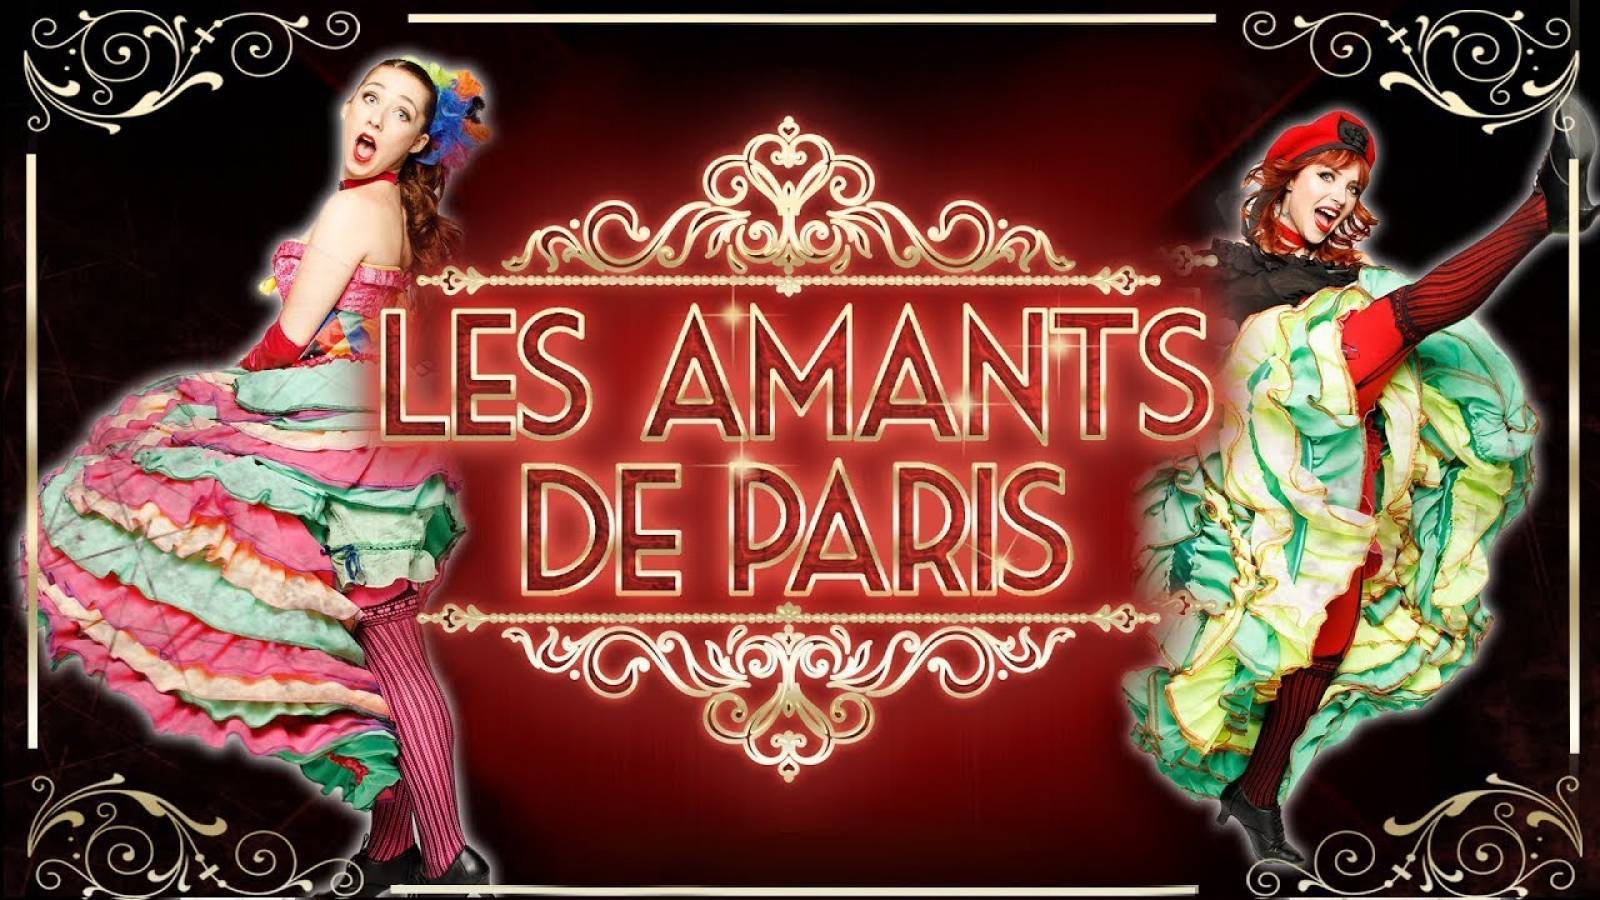 Les Amants de Paris: Une Comédie Musicale Romantique et Époustouflante pour les Adultes